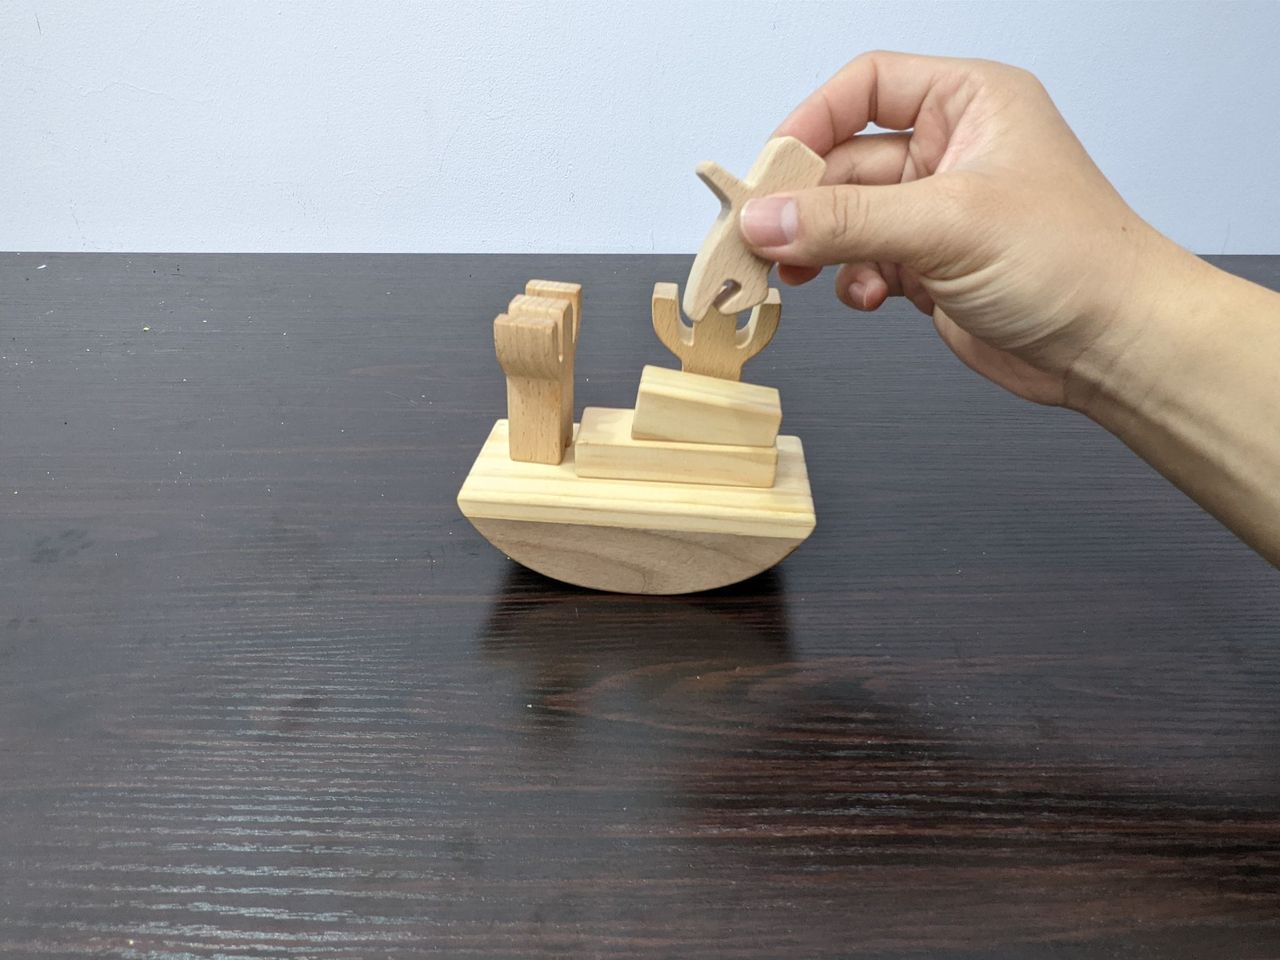 EASY不搖平衡疊疊樂遊戲
一般玩法
原本玩法是挑戰者將積木搭建好船後，一個個將小人放上去，同時間要保持船隻的平衡。圖╱愛迪樂診所提供